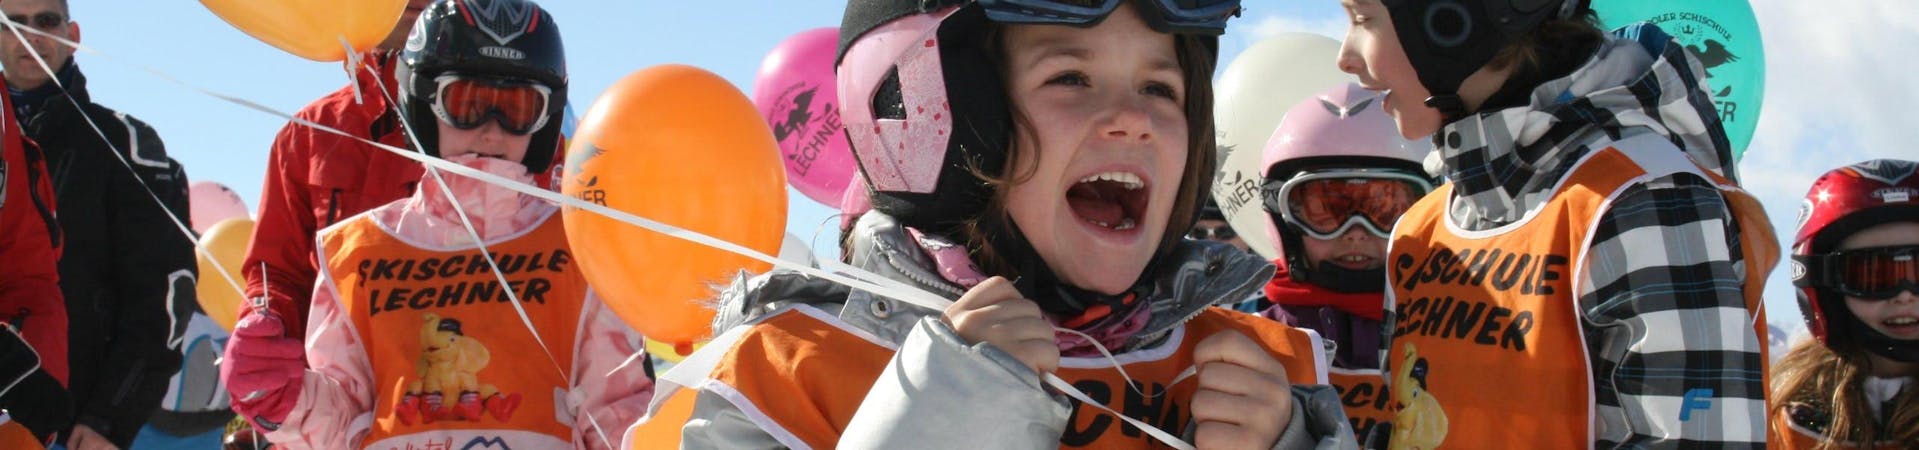 Verschillende kinderen die deelnemen aan de skilessen voor kinderen voor beginners (5-14 jaar), georganiseerd door de skischool Skischule Lechner, houden ballonnen vast met het logo van de skischool erop gedrukt.